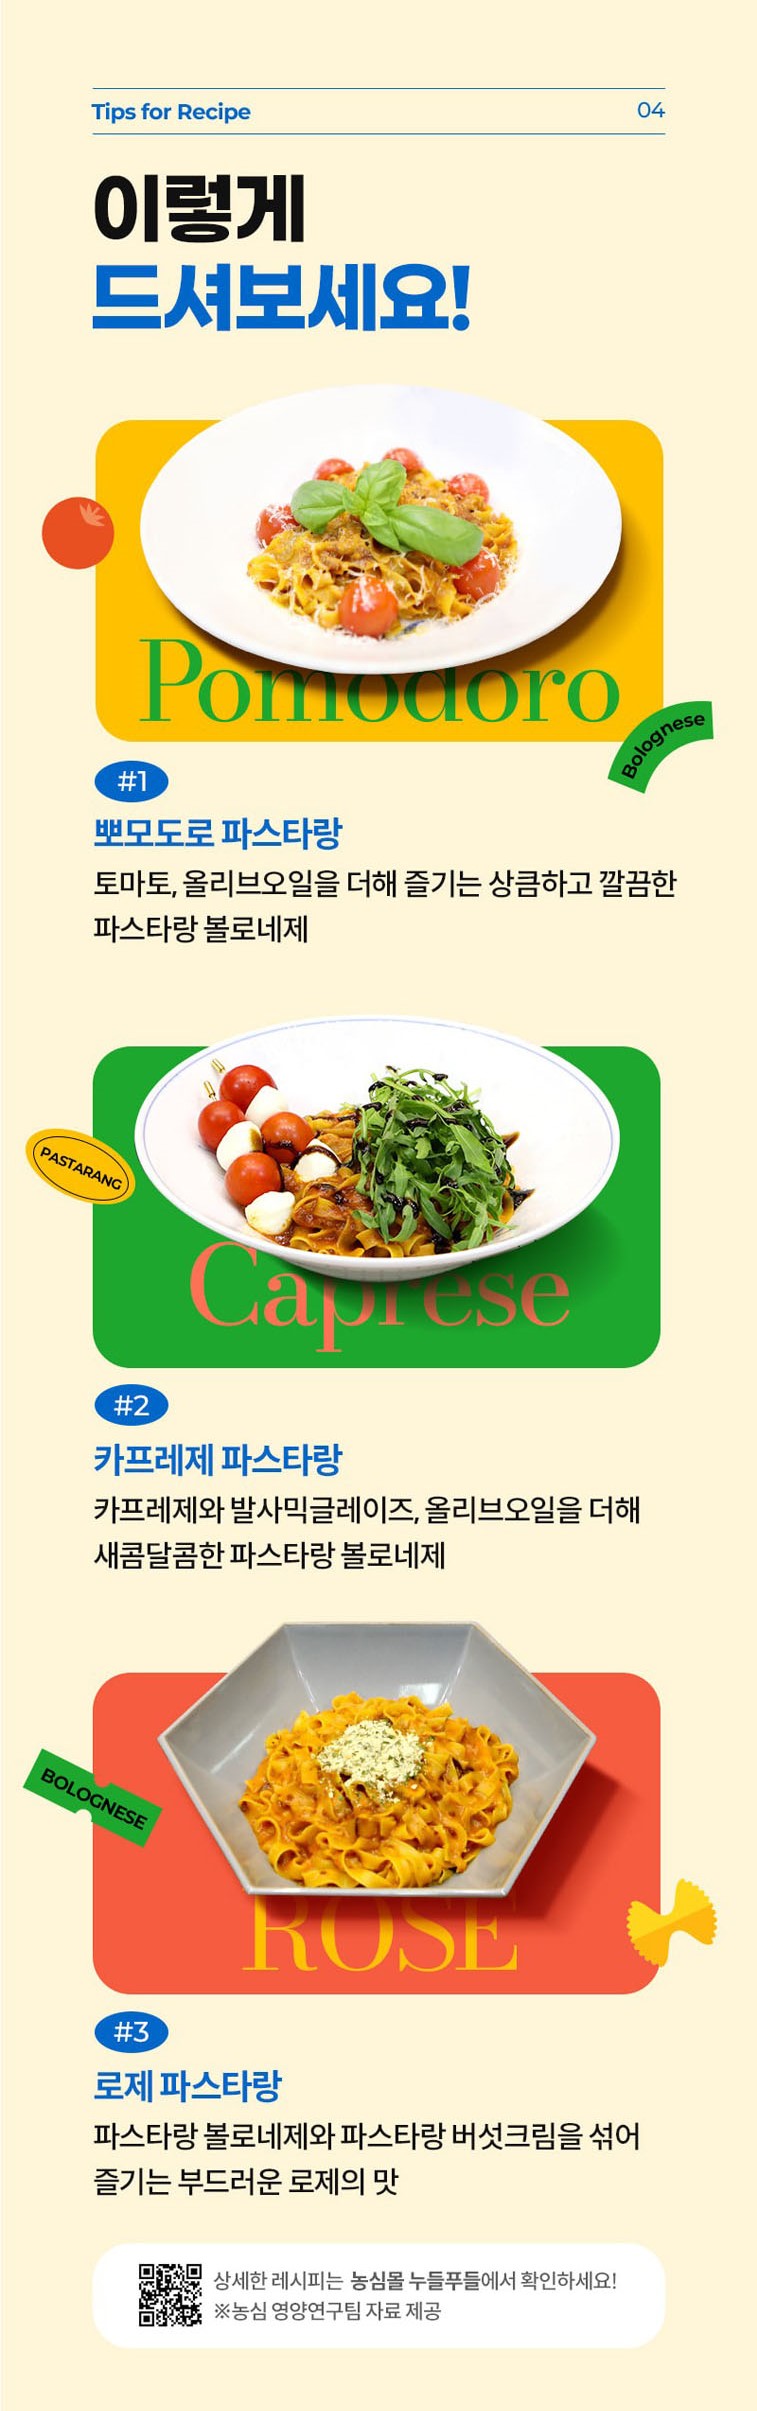 韓國食品-[농심] 파스타랑 (볼로네제) 180g